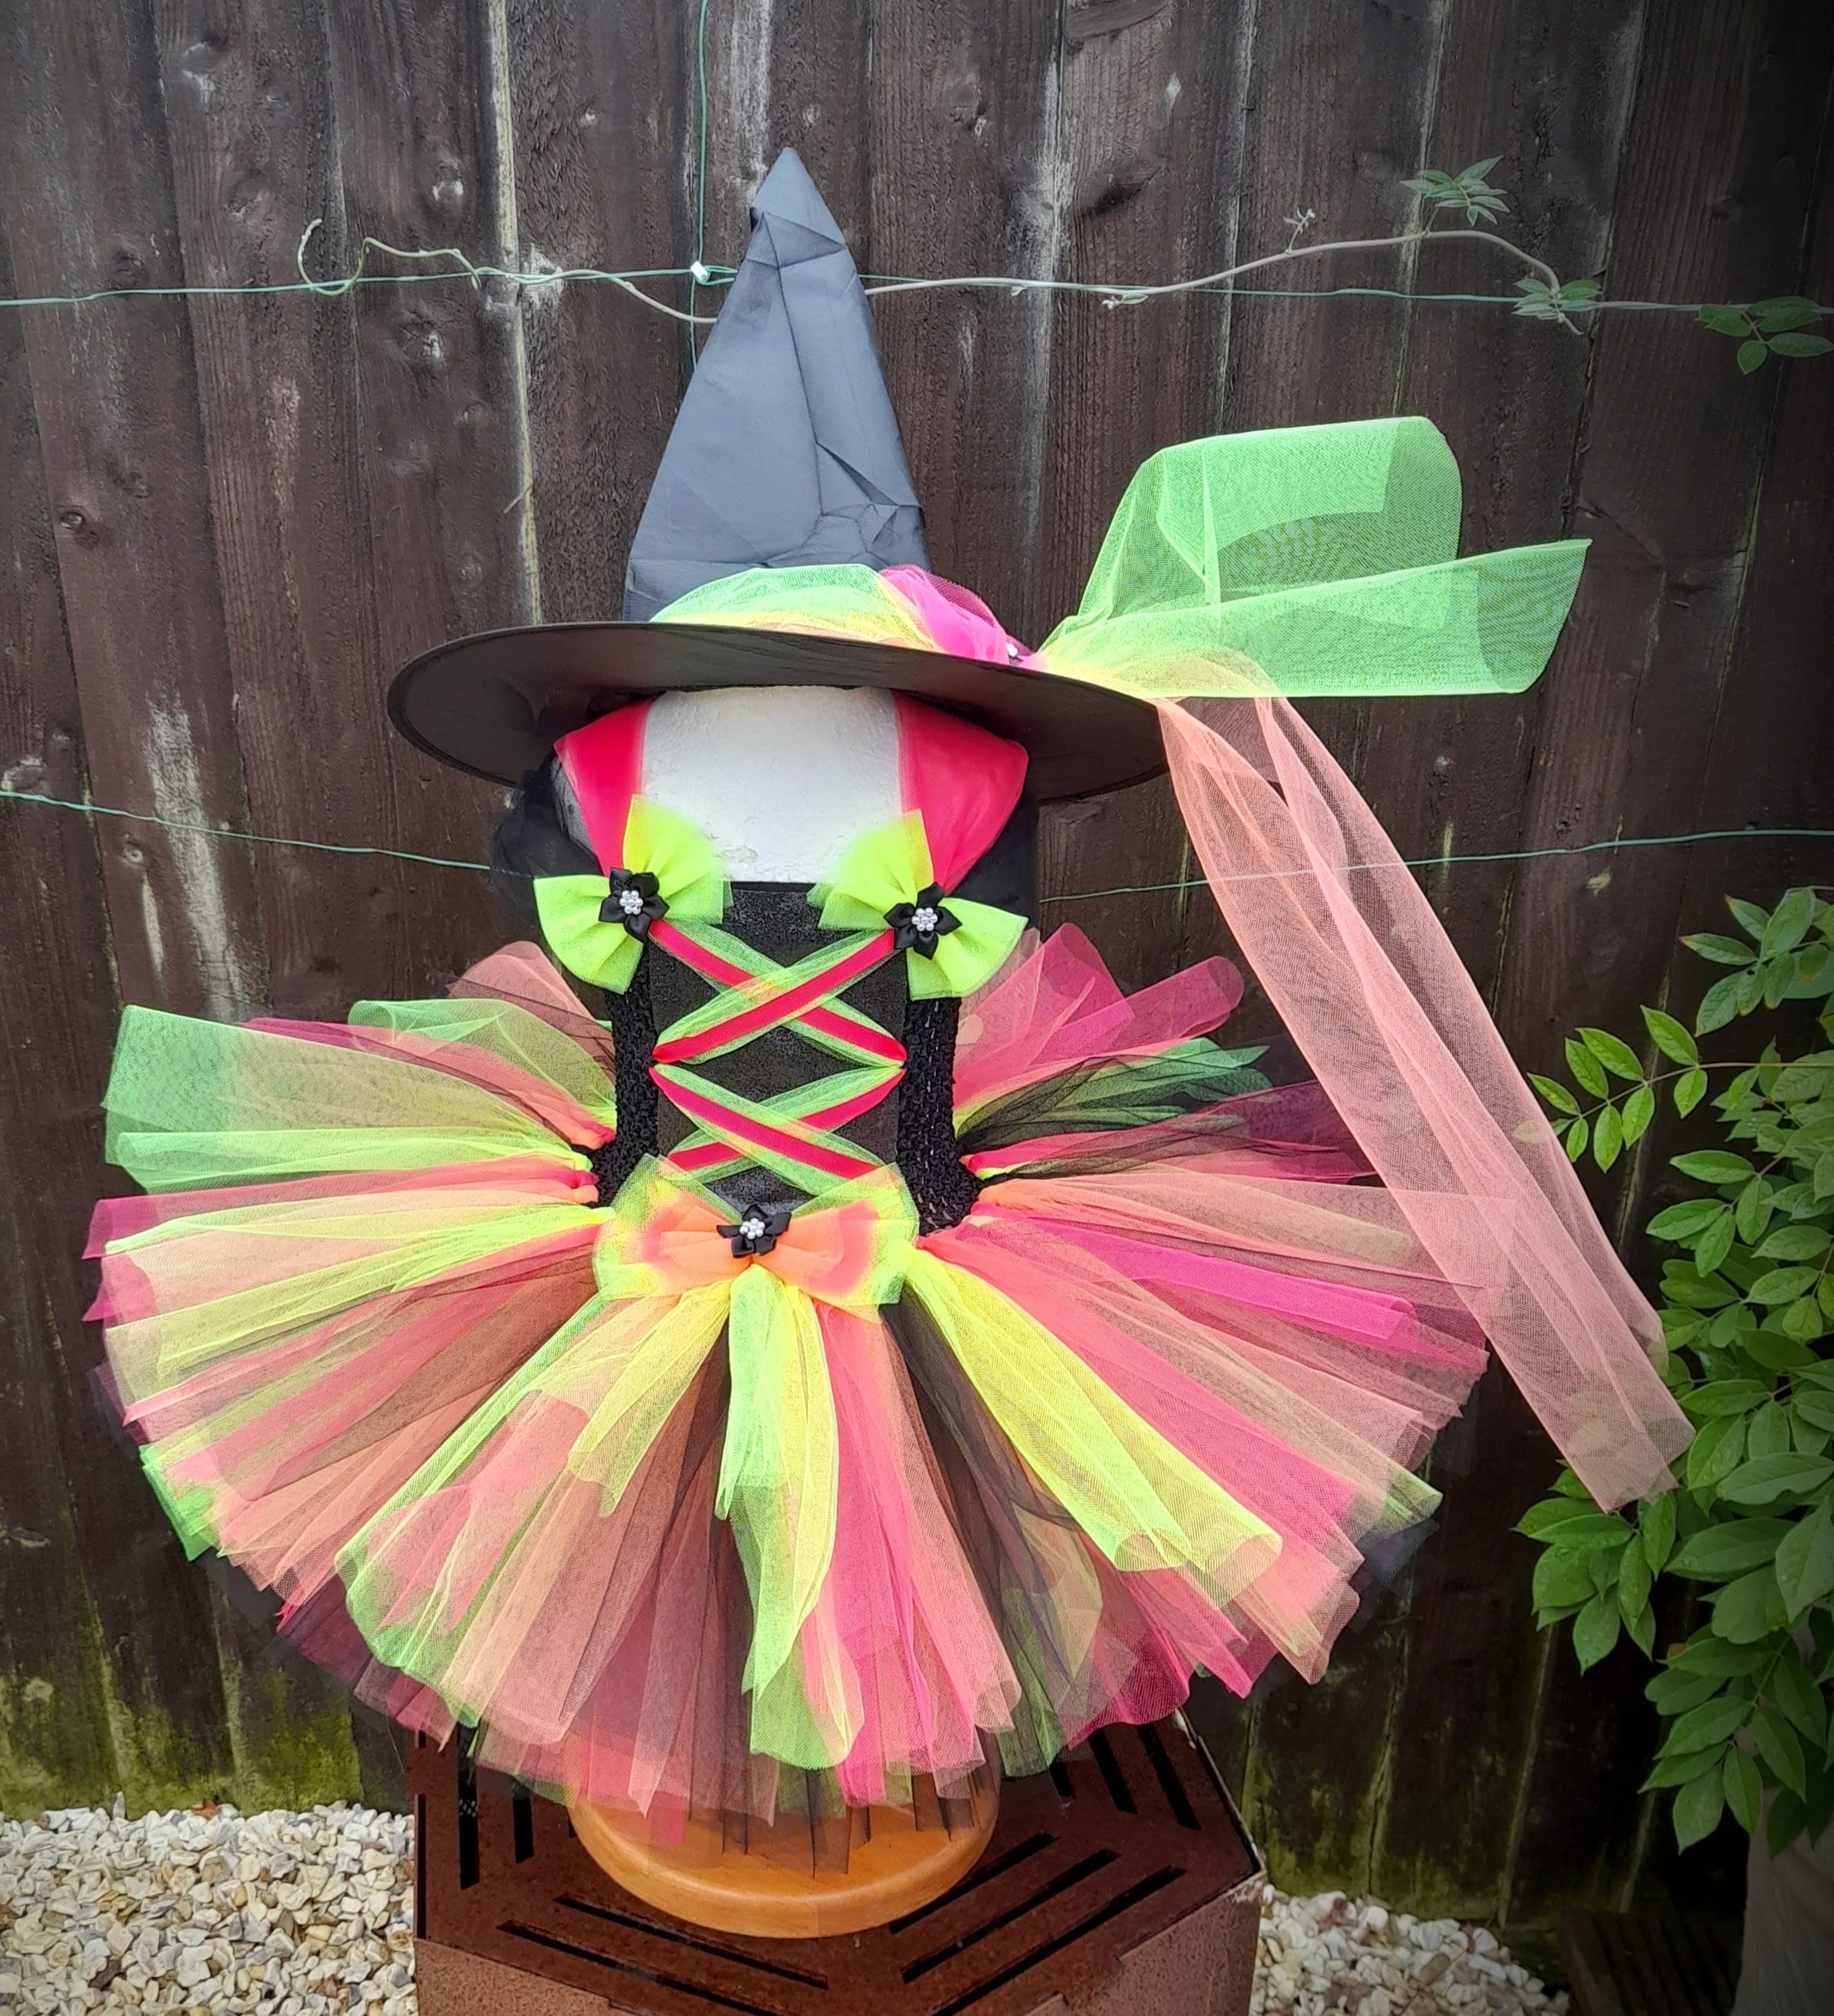 Partymall Costume de sorcière pour fille - Vêtements avec étoiles 